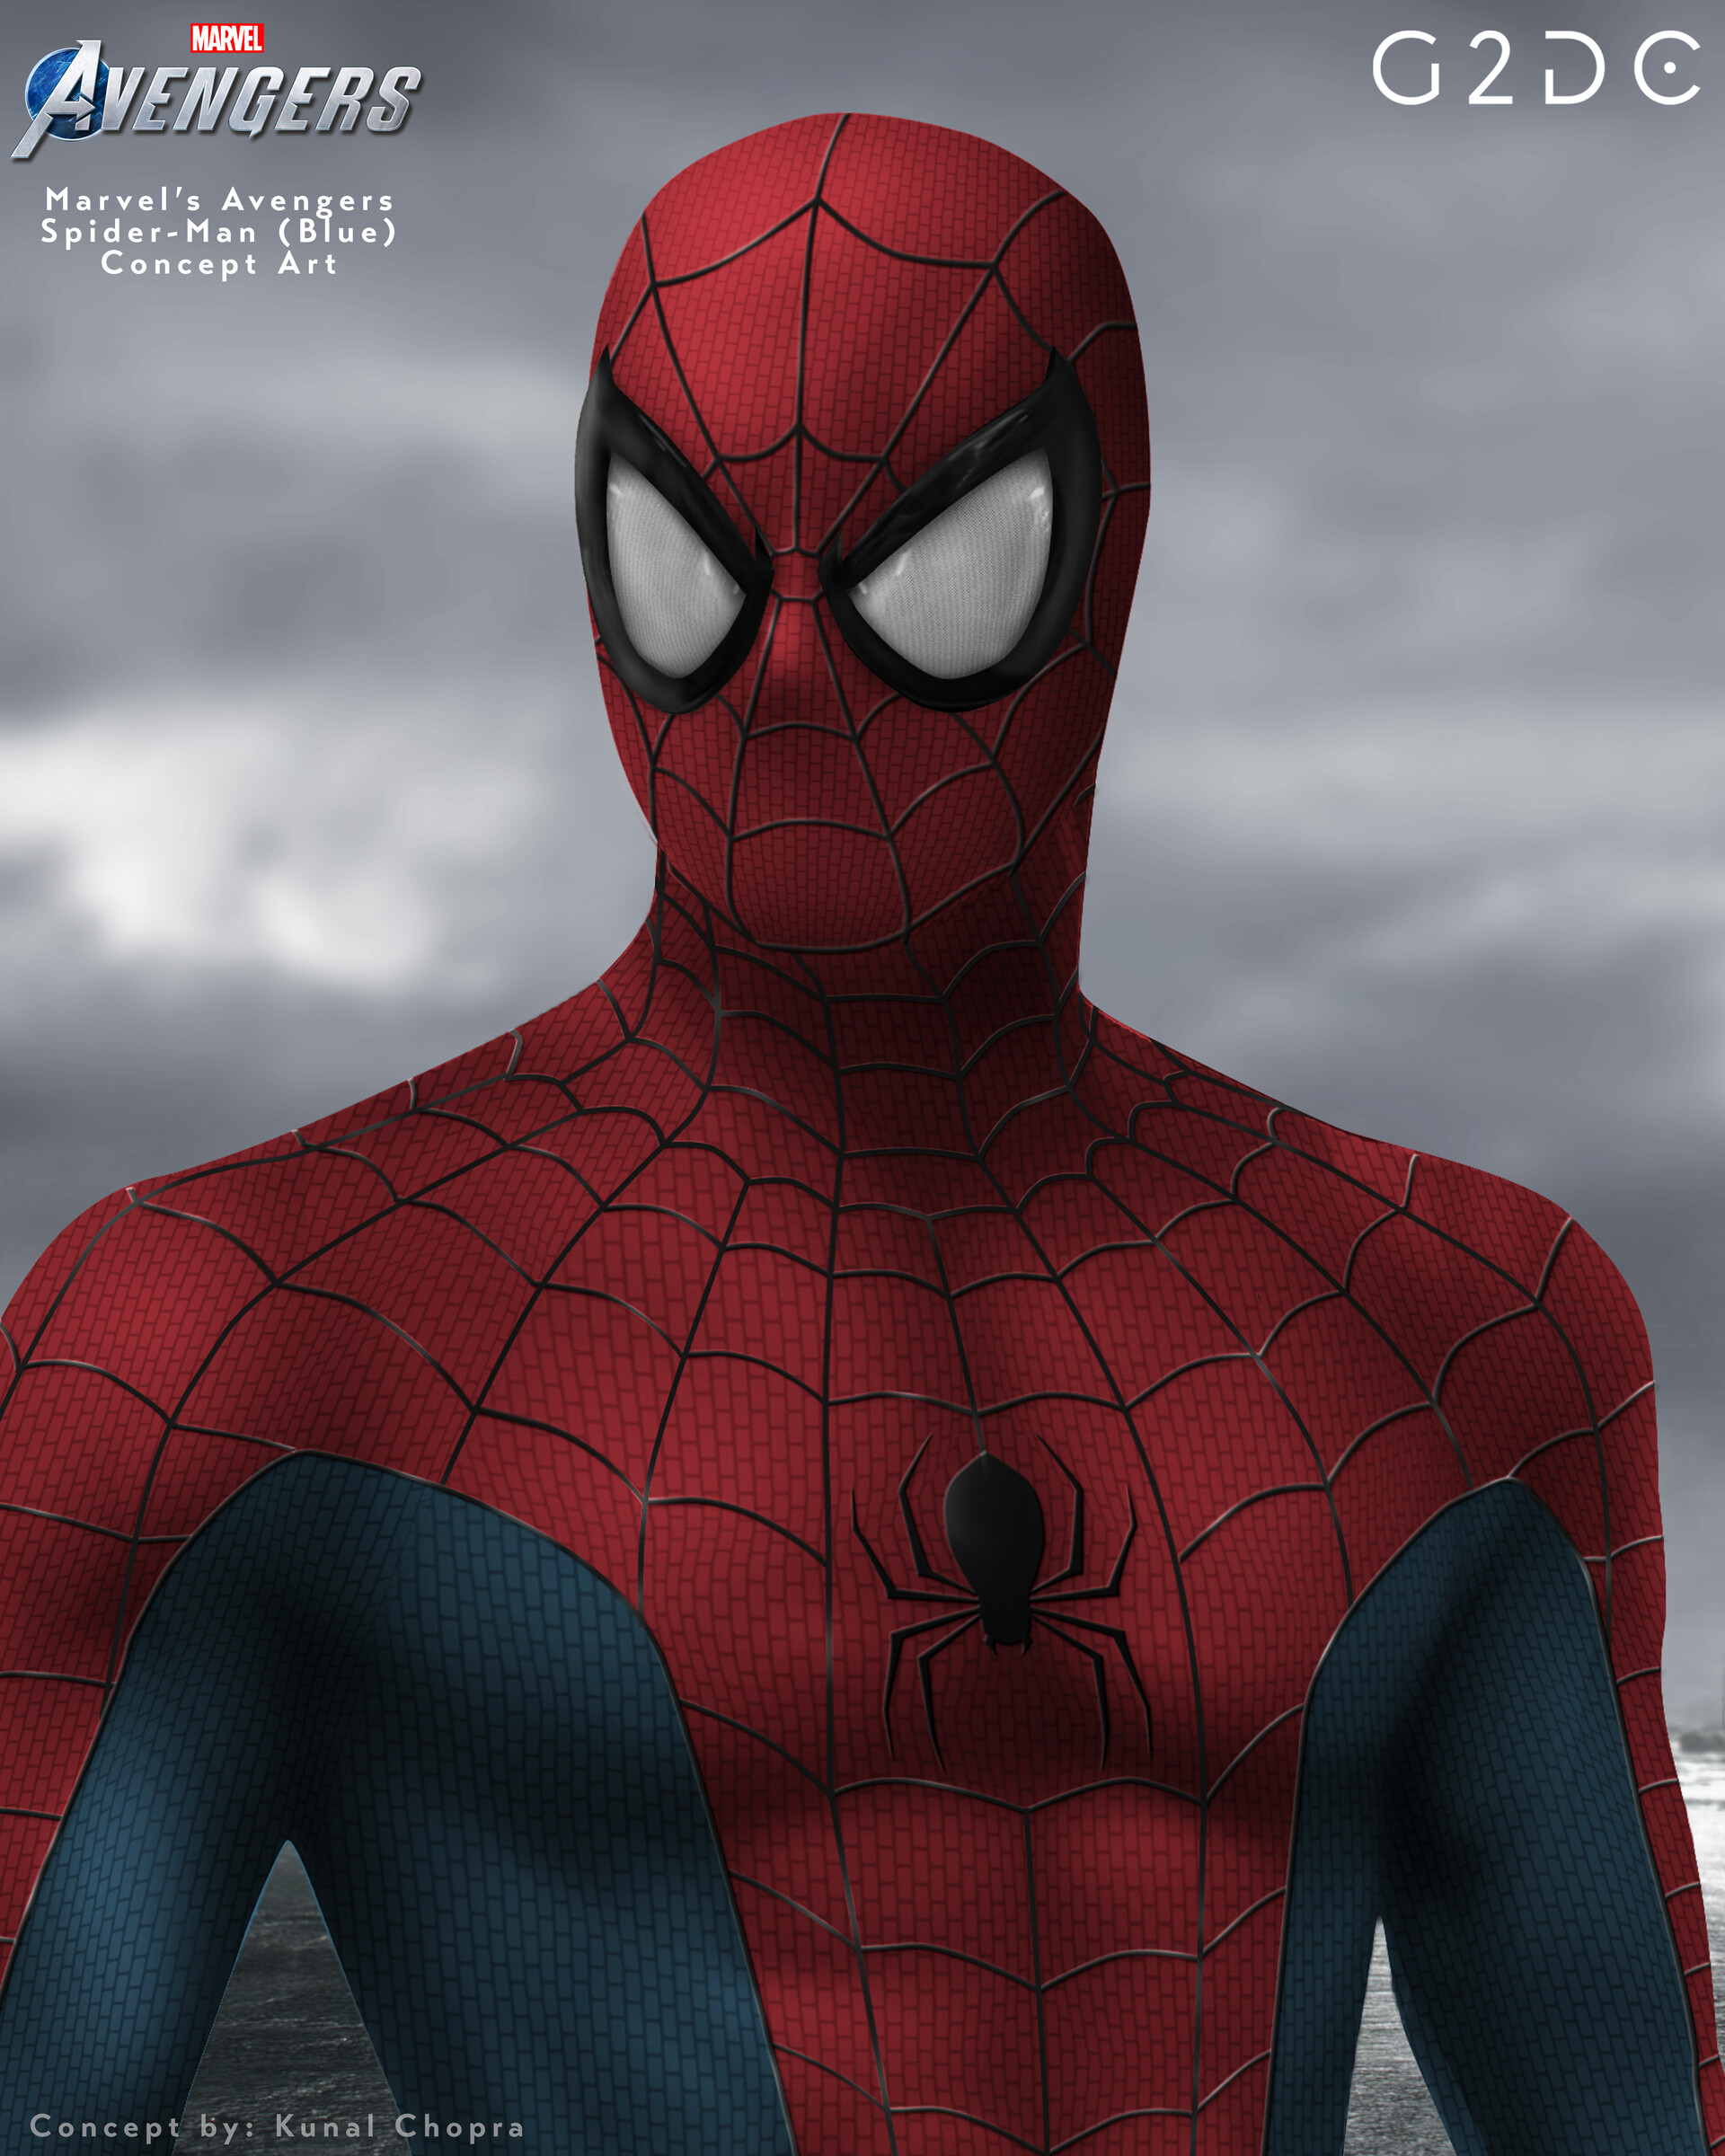 ArtStation - Marvel's Avengers Spider-Man Concept Art